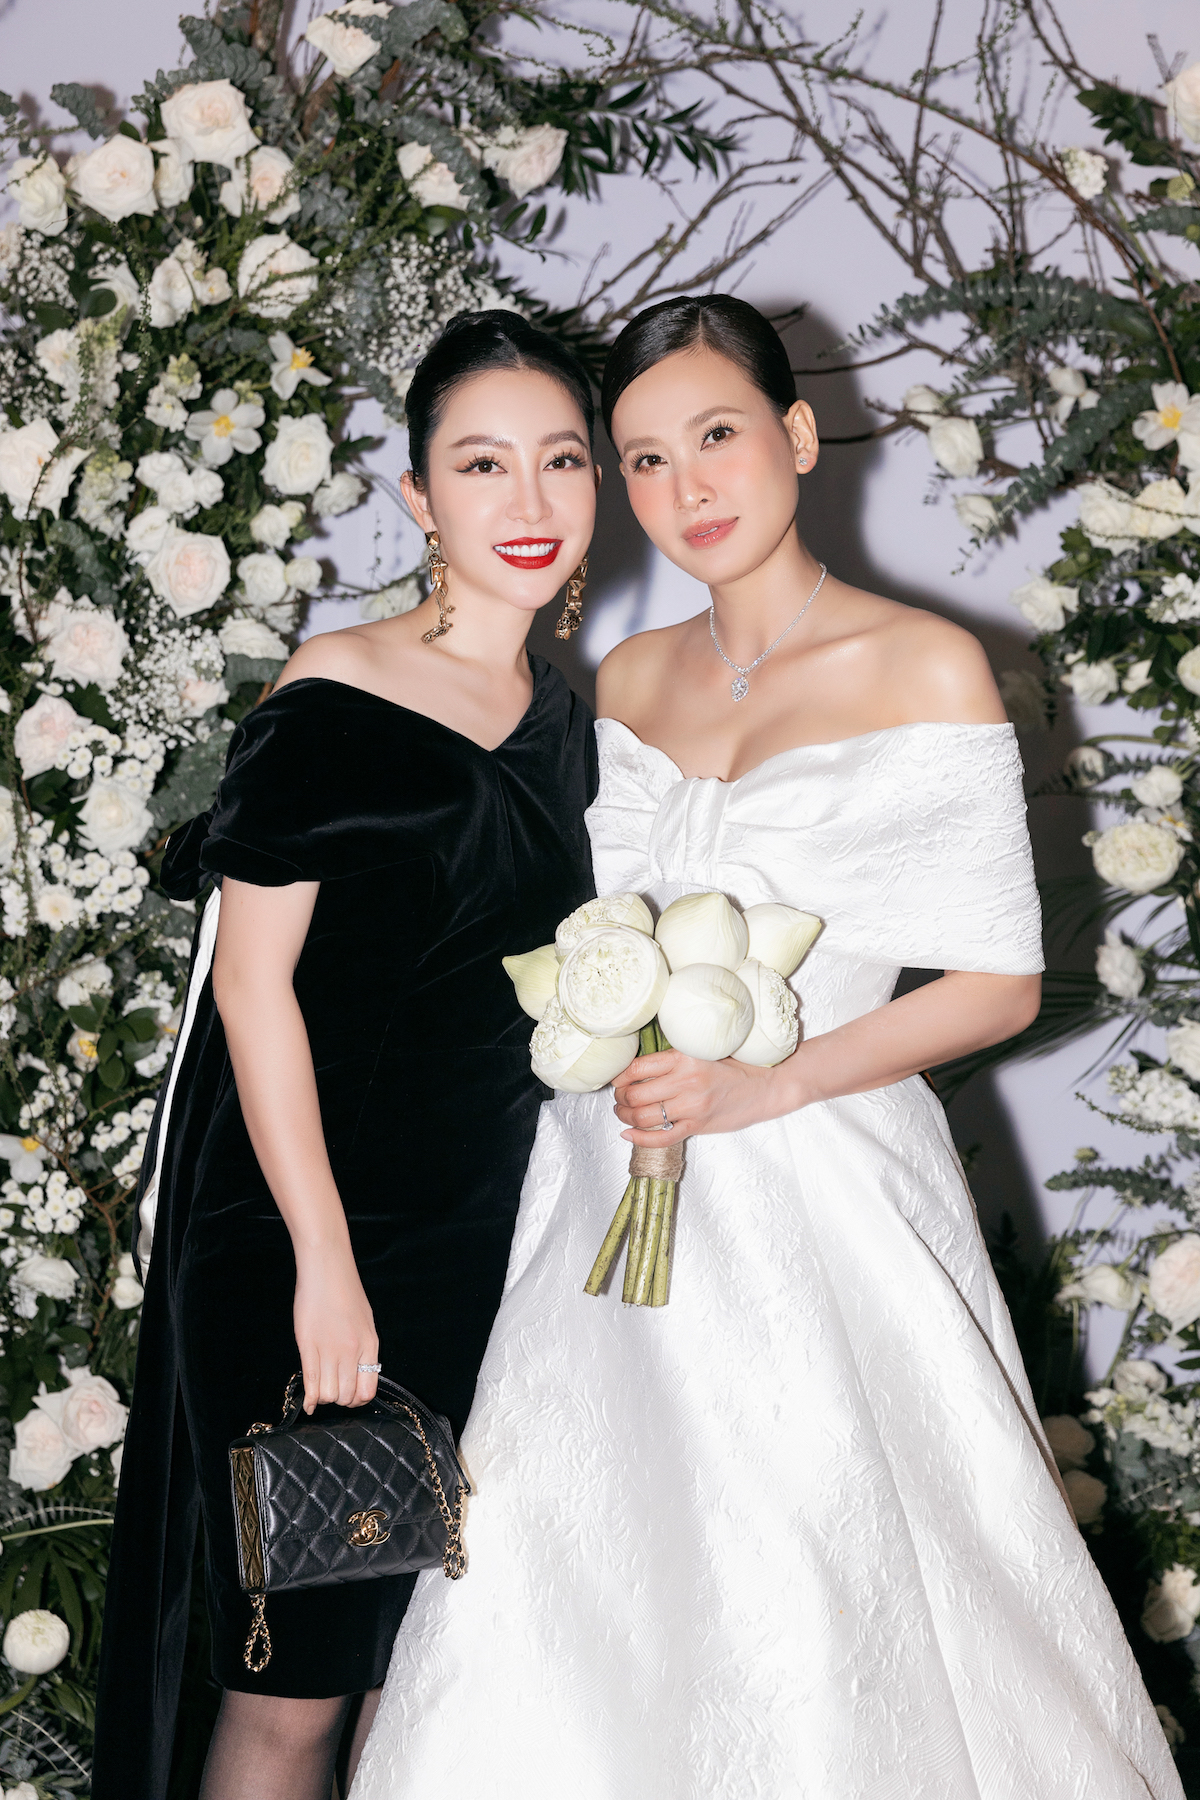 Dàn sao vui mừng dự tiệc cưới của Hoa hậu Dương Mỹ Linh - 5